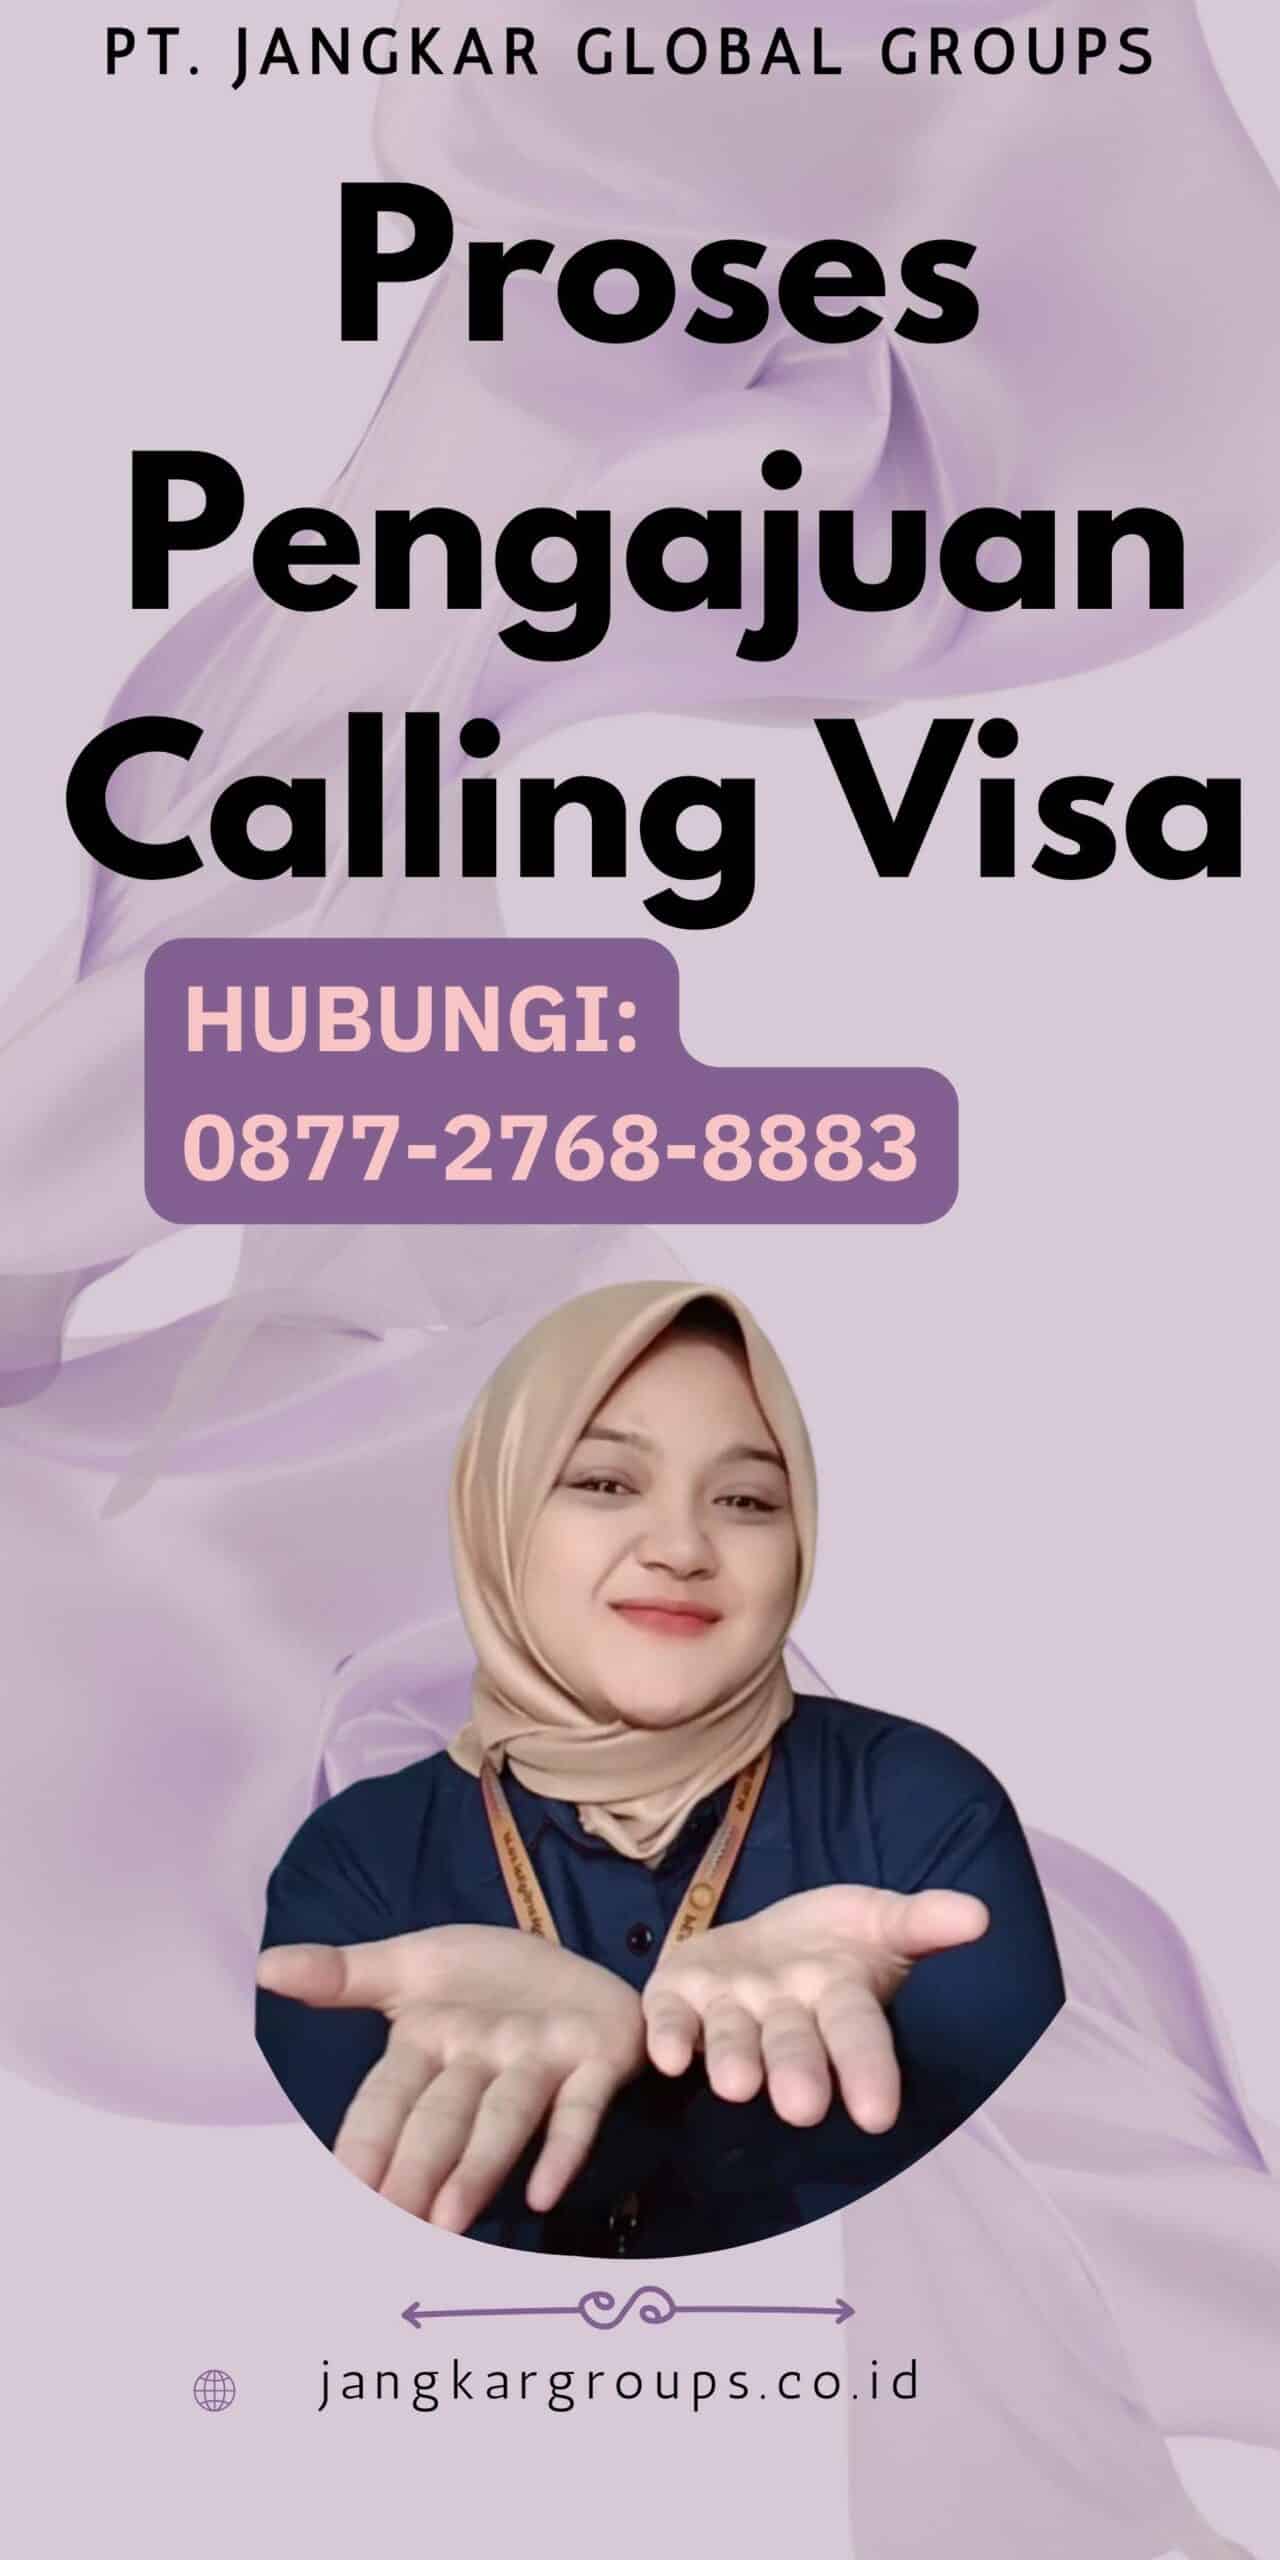 Proses Pengajuan Calling Visa